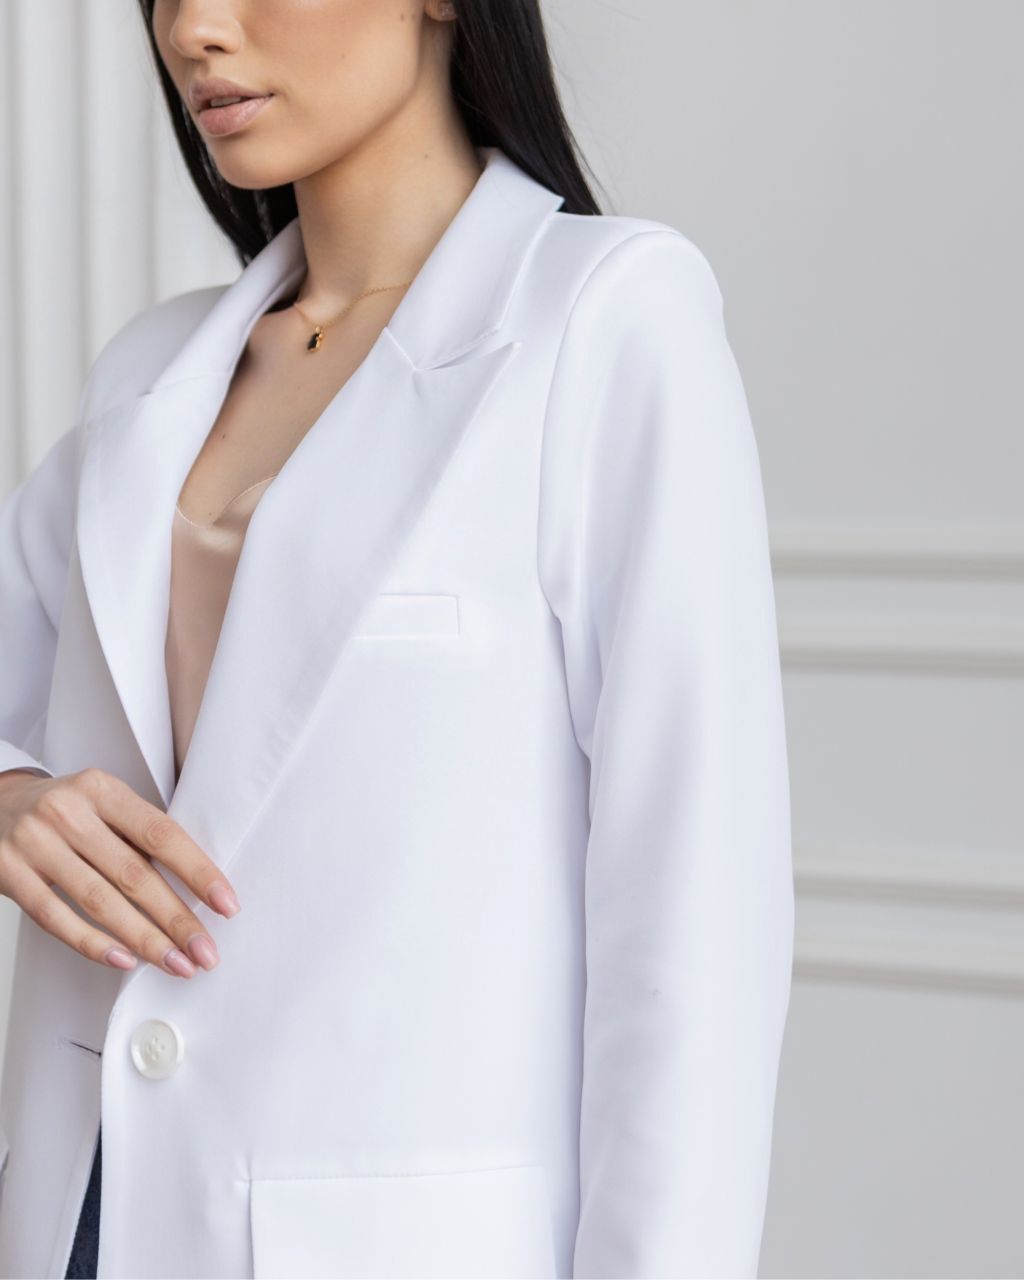 Стильный классический пиджак Сицилия белый, Белый, XS